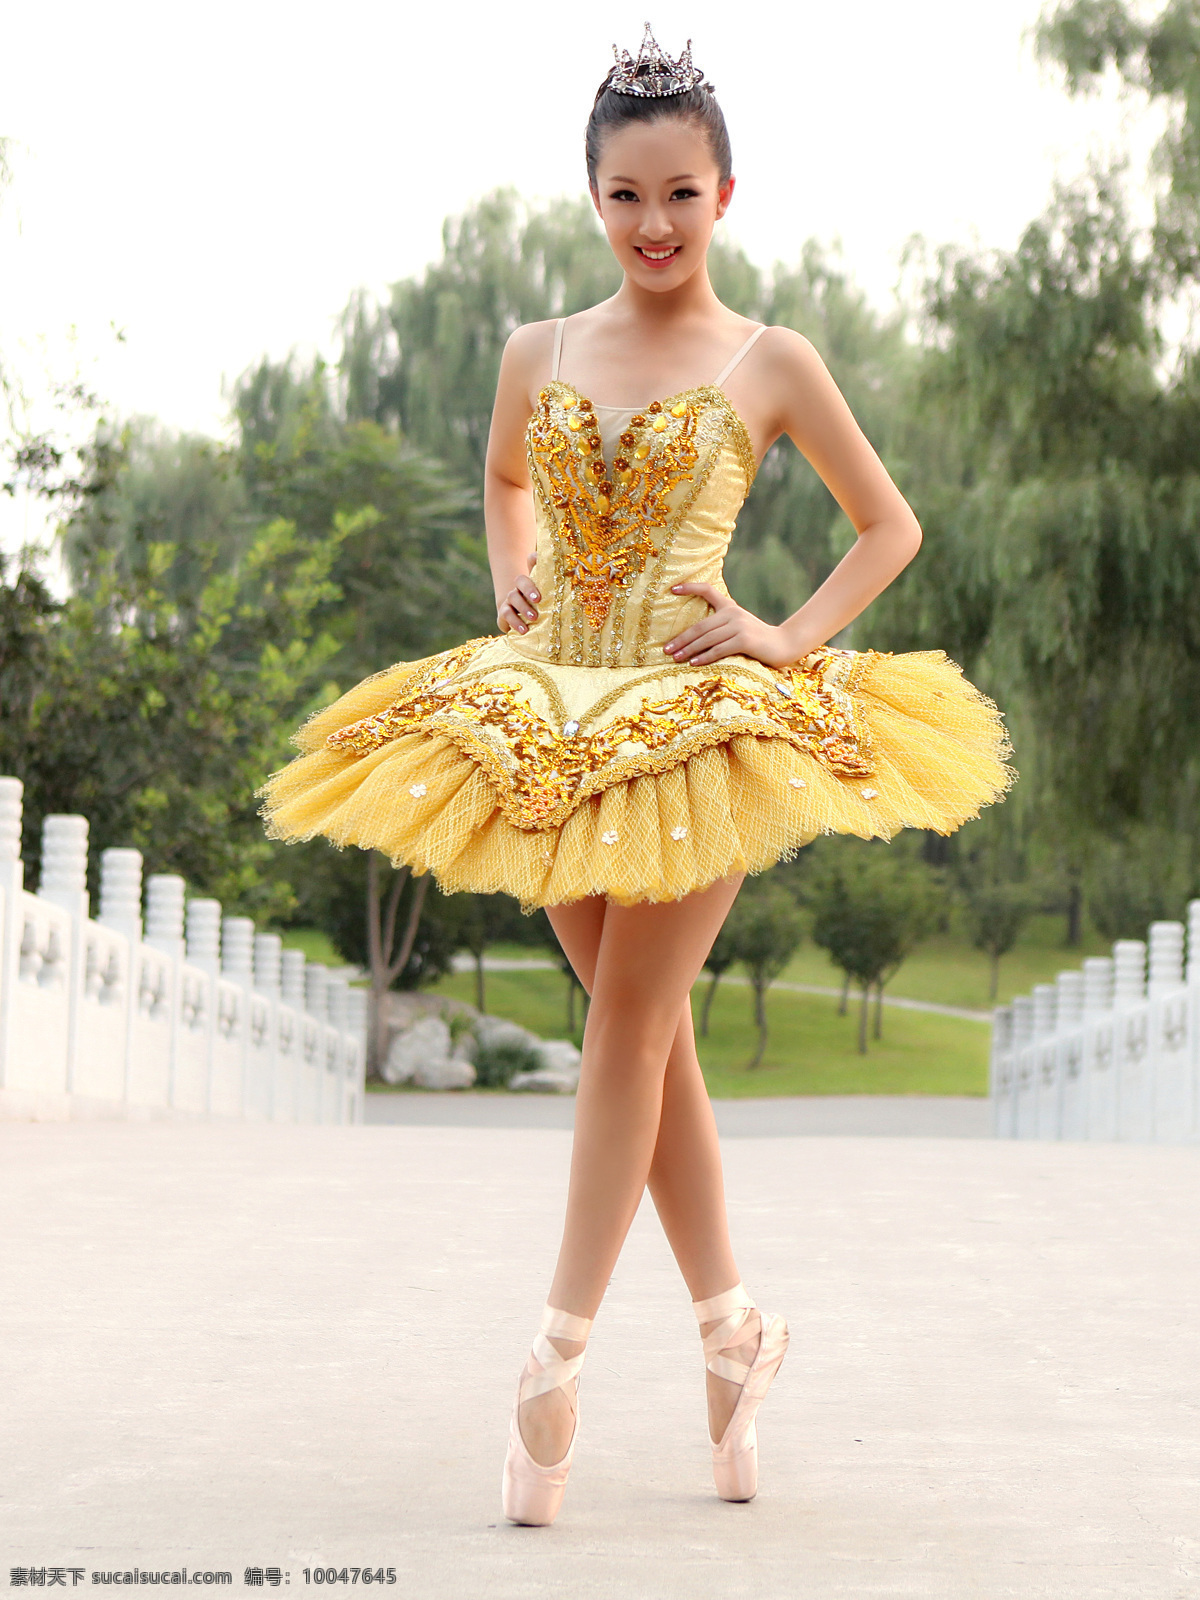 崔安娜 芭蕾装 写真 美国 华裔 小姐 冠军 明星偶像 人物图库